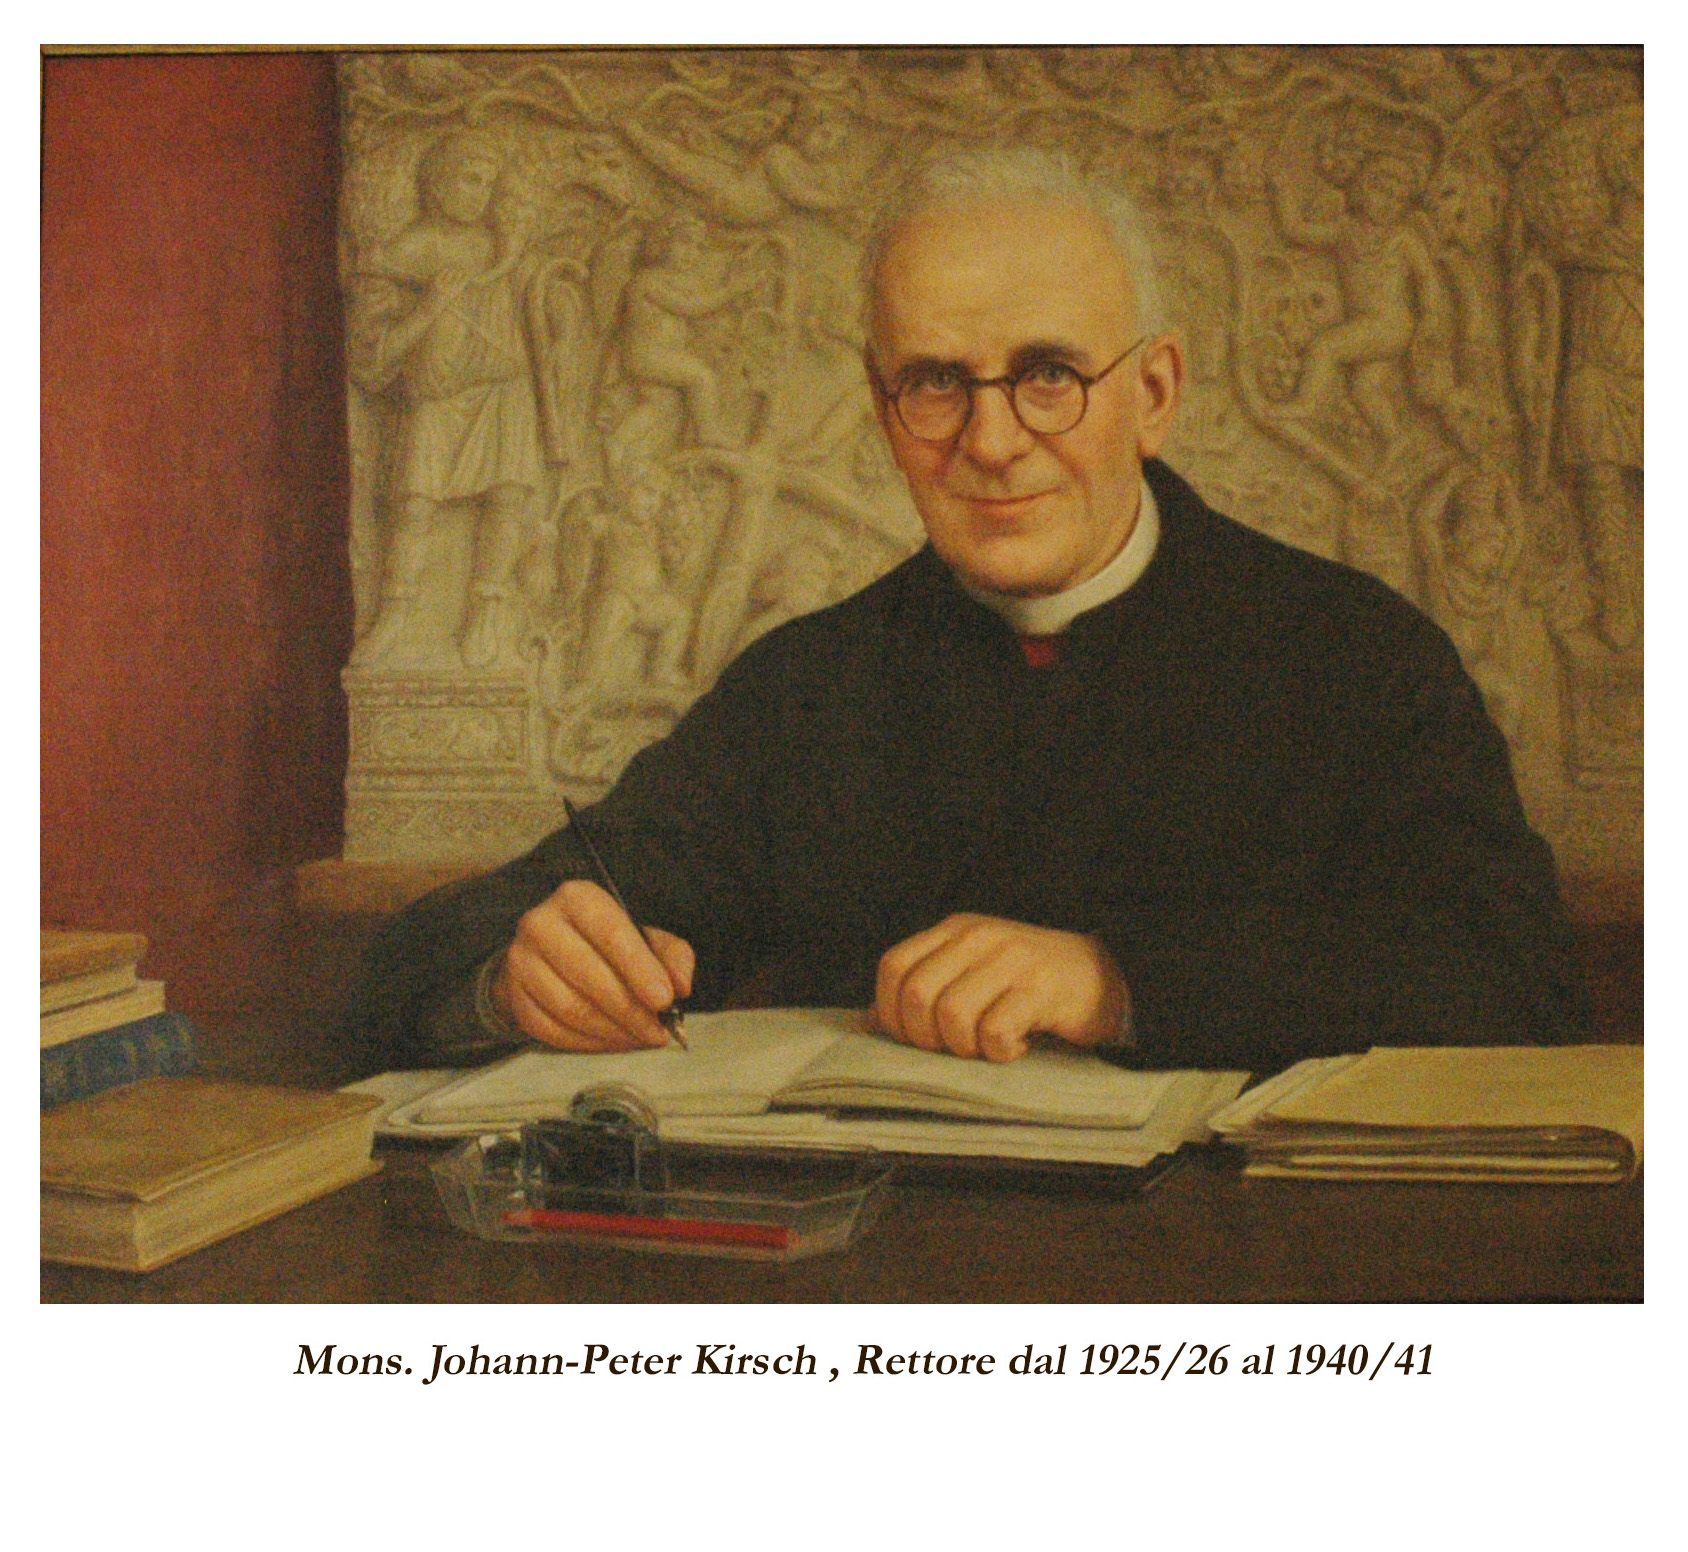 Monsignor Johann-Peter Kirsch, Rettore dal 1925/26 al 1940/41